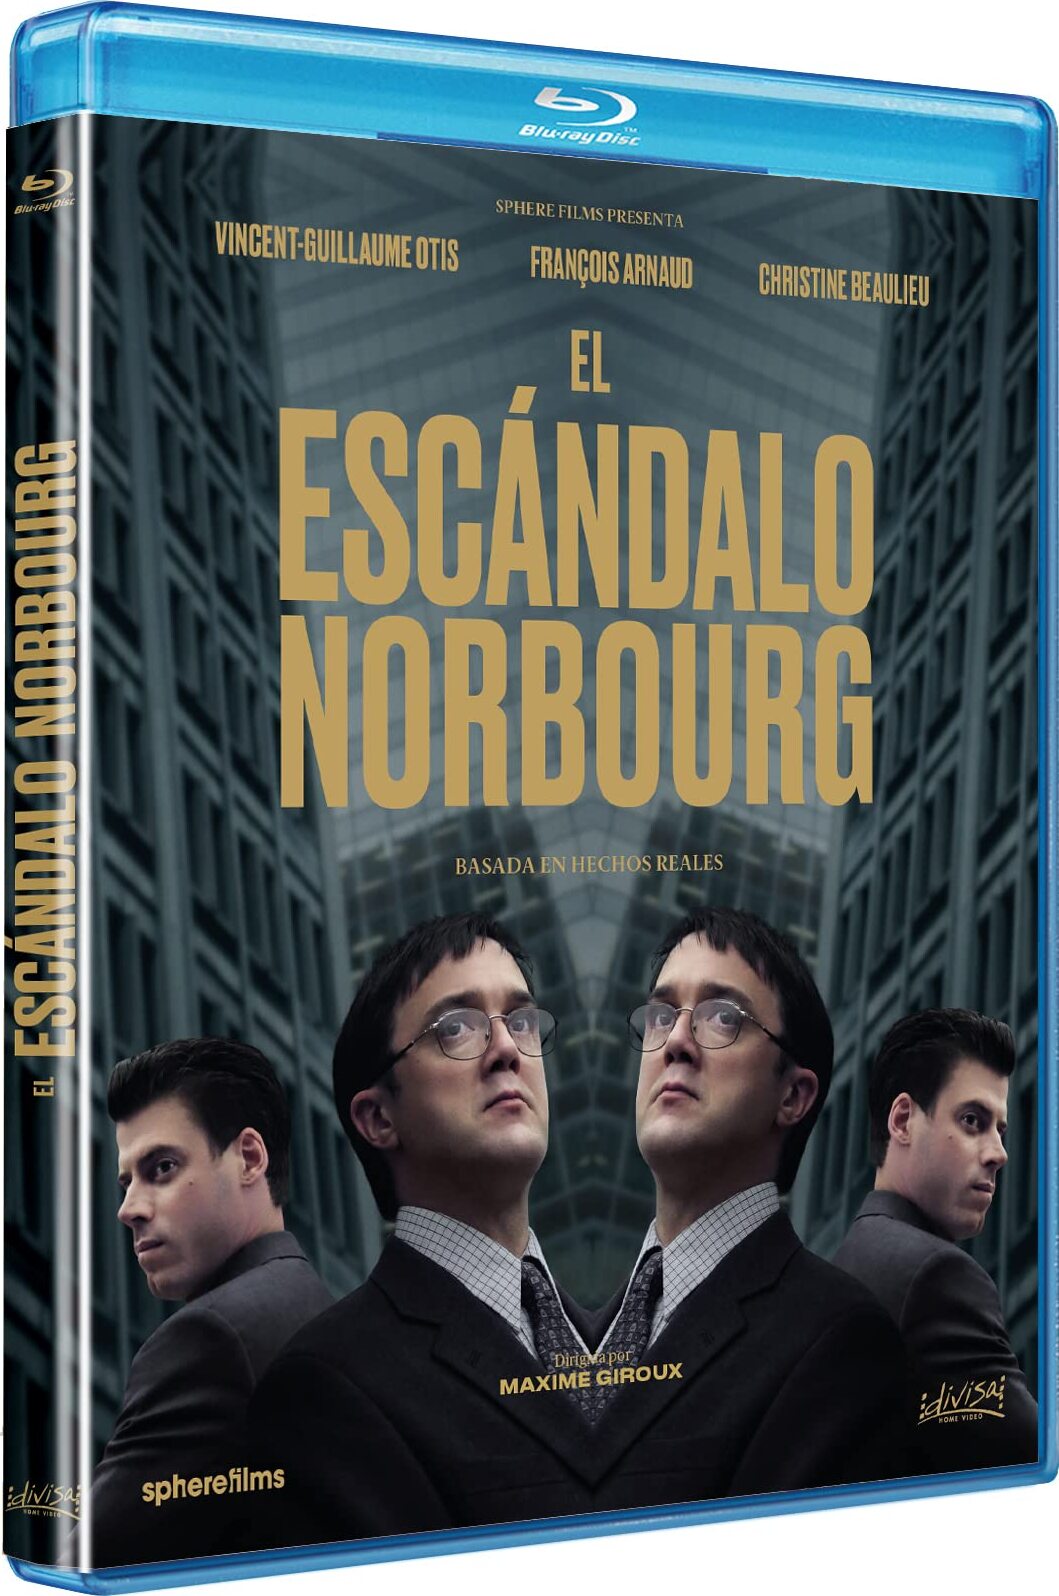 Norbourg Blu-ray (El Escandalo de Norbourg) (Spain)